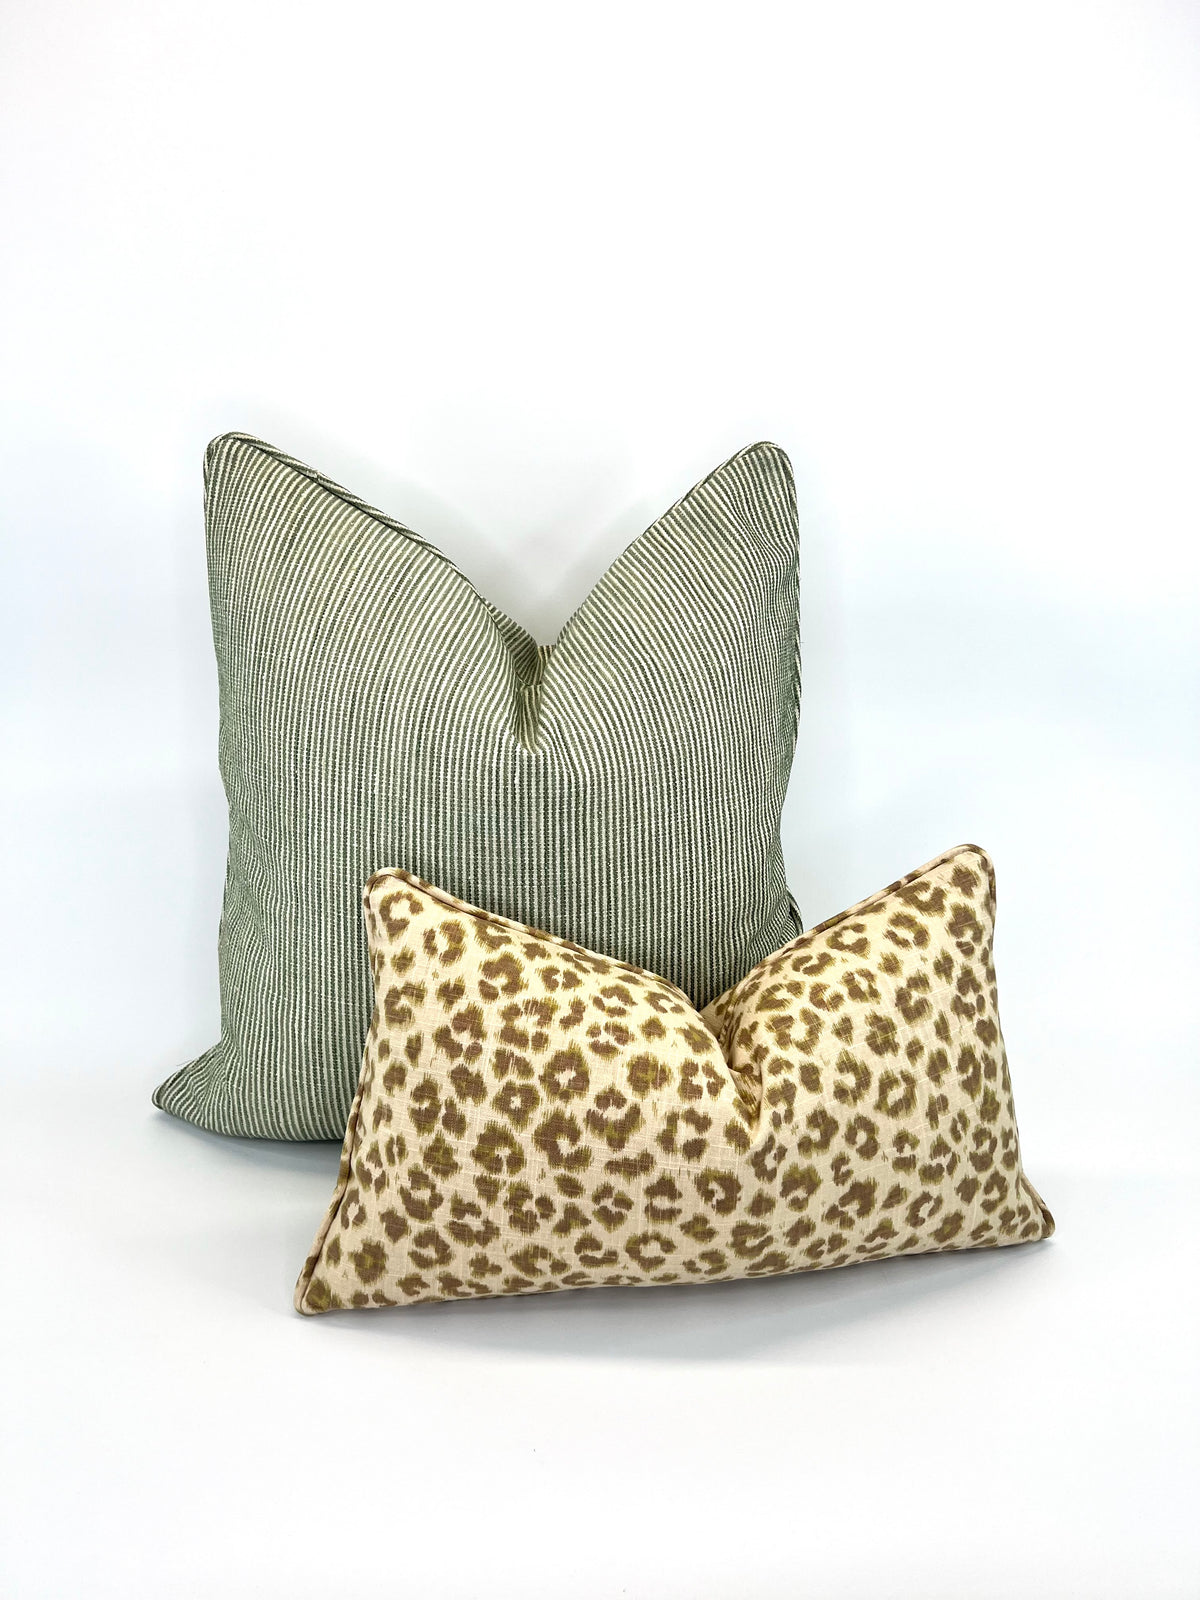 Decorative Pillow Cover in Bottom Line Devon Green